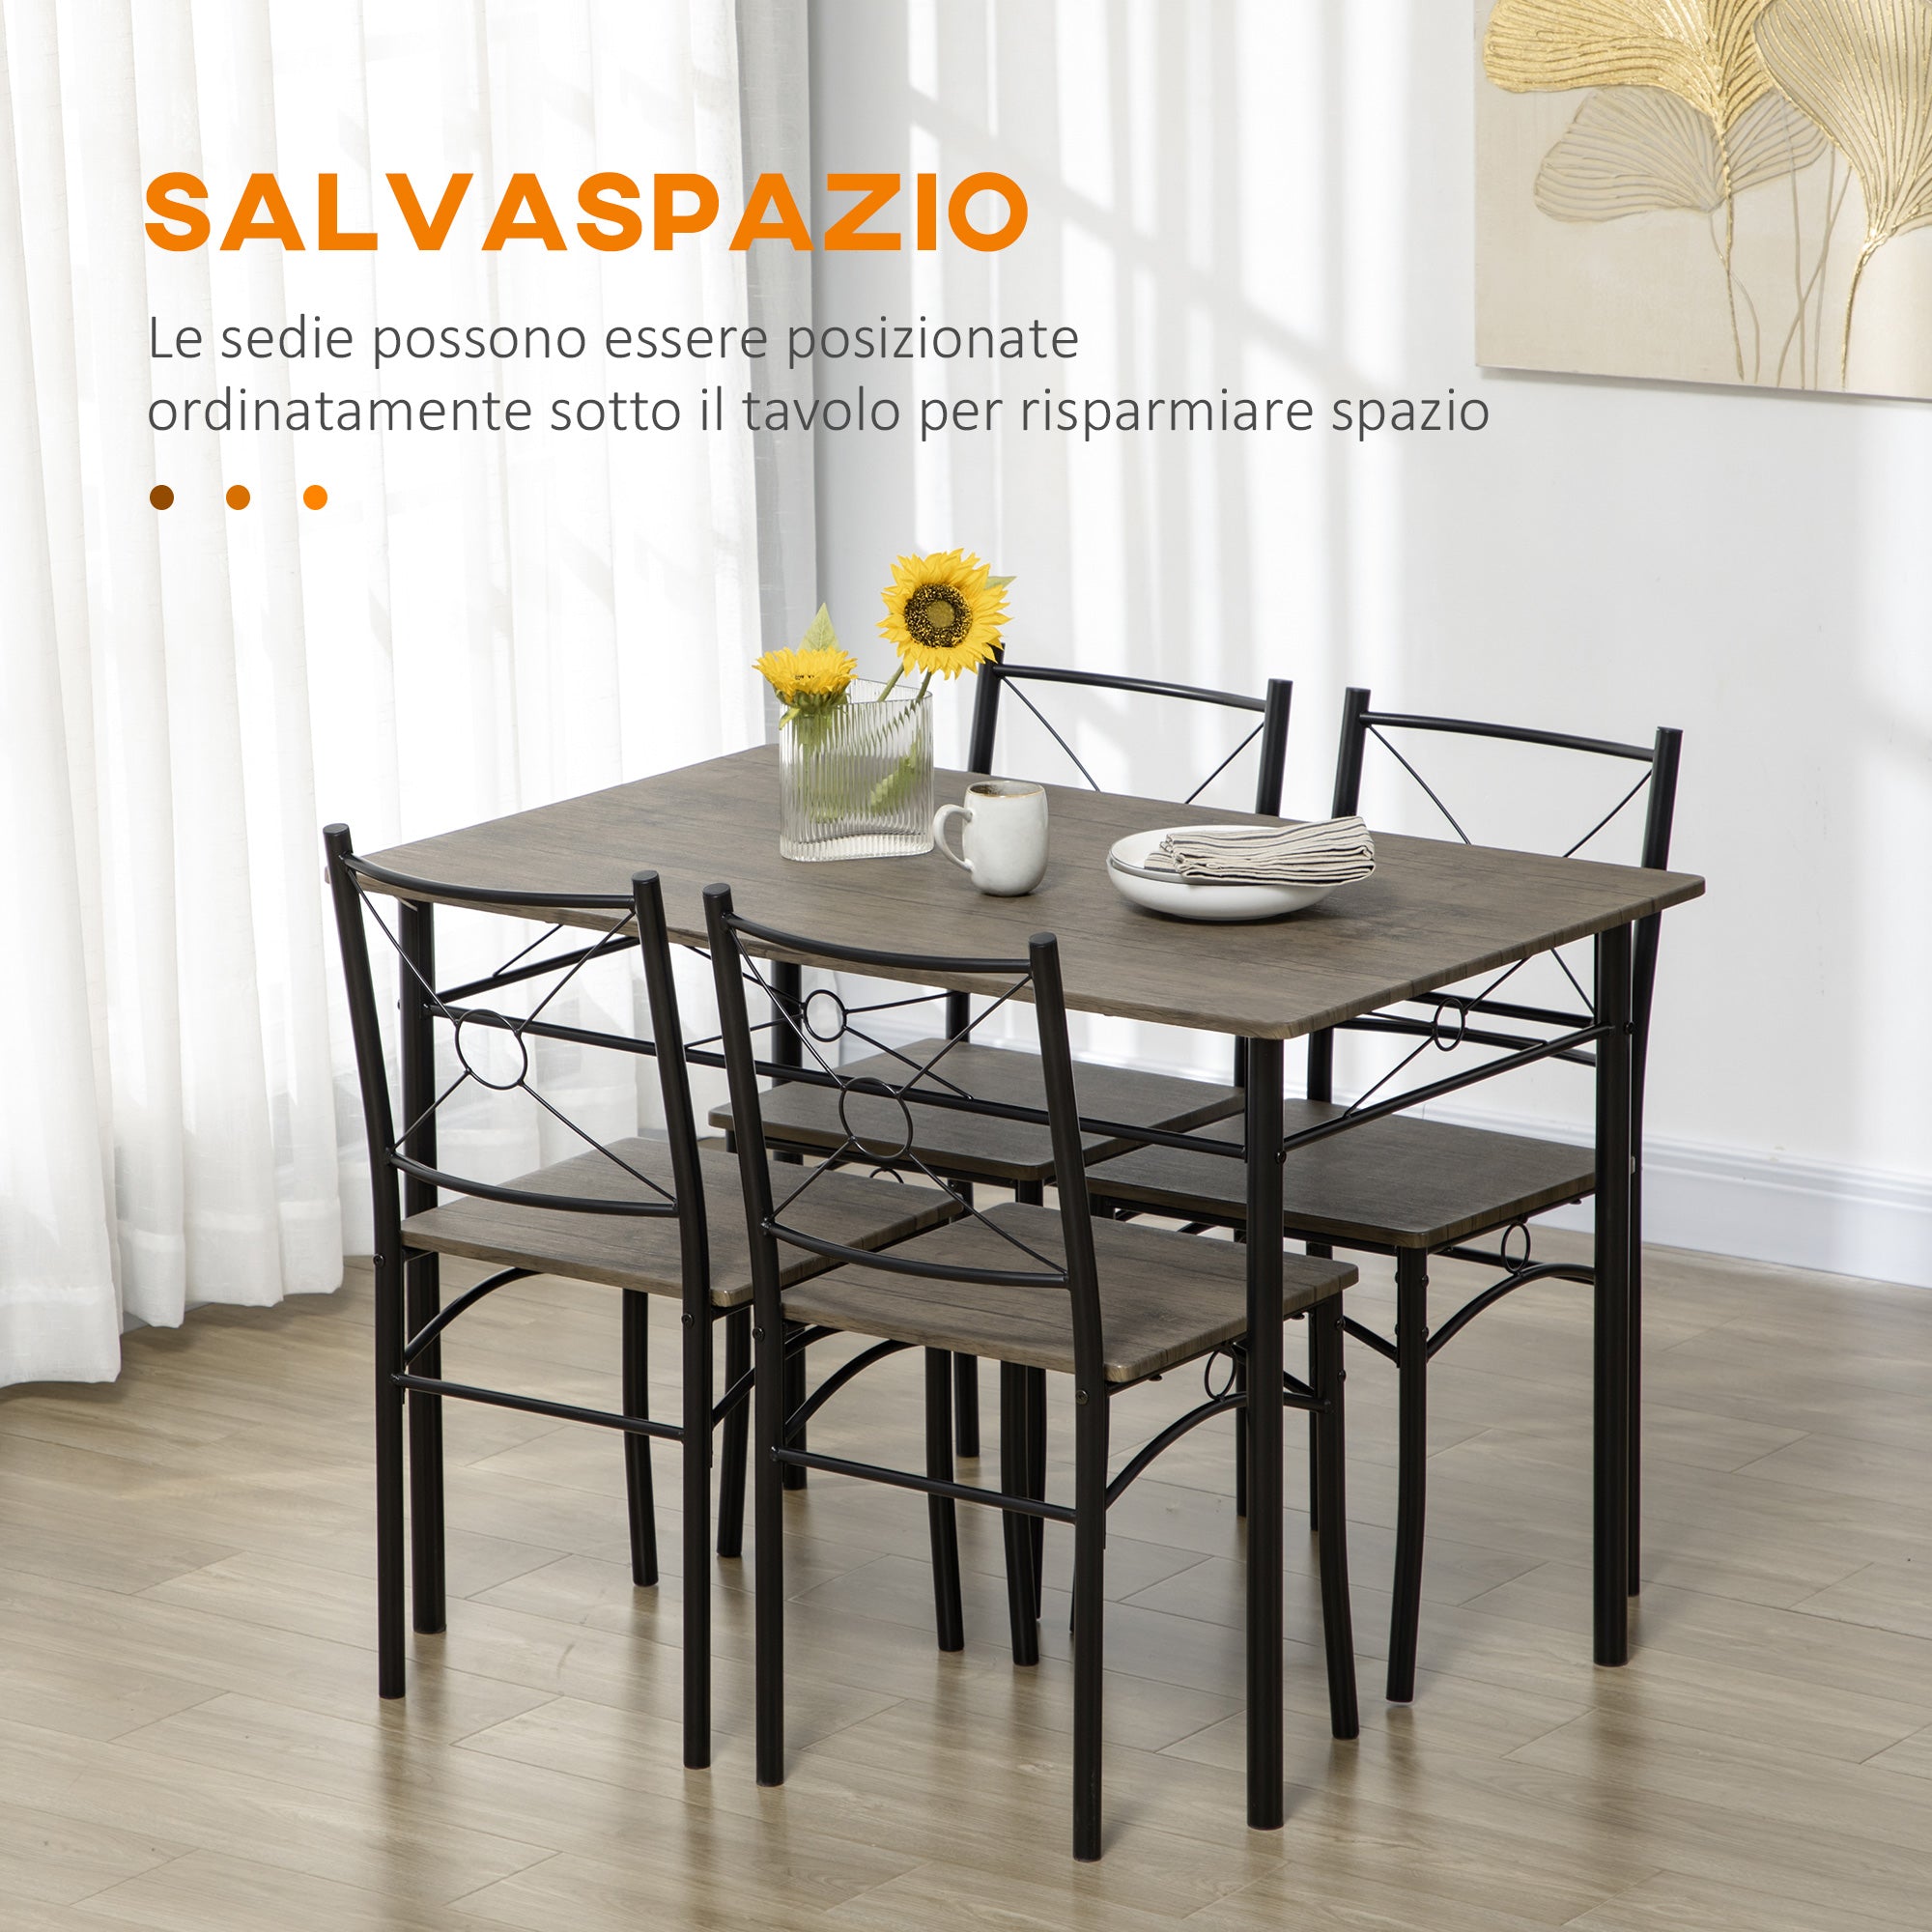 EASYCOMFORT Tavolo da Pranzo con 4 Sedie, Set 5 Pezzi in MDF e Metallo per  Sala da Pranzo, Cucina, Soggiorno e Bar